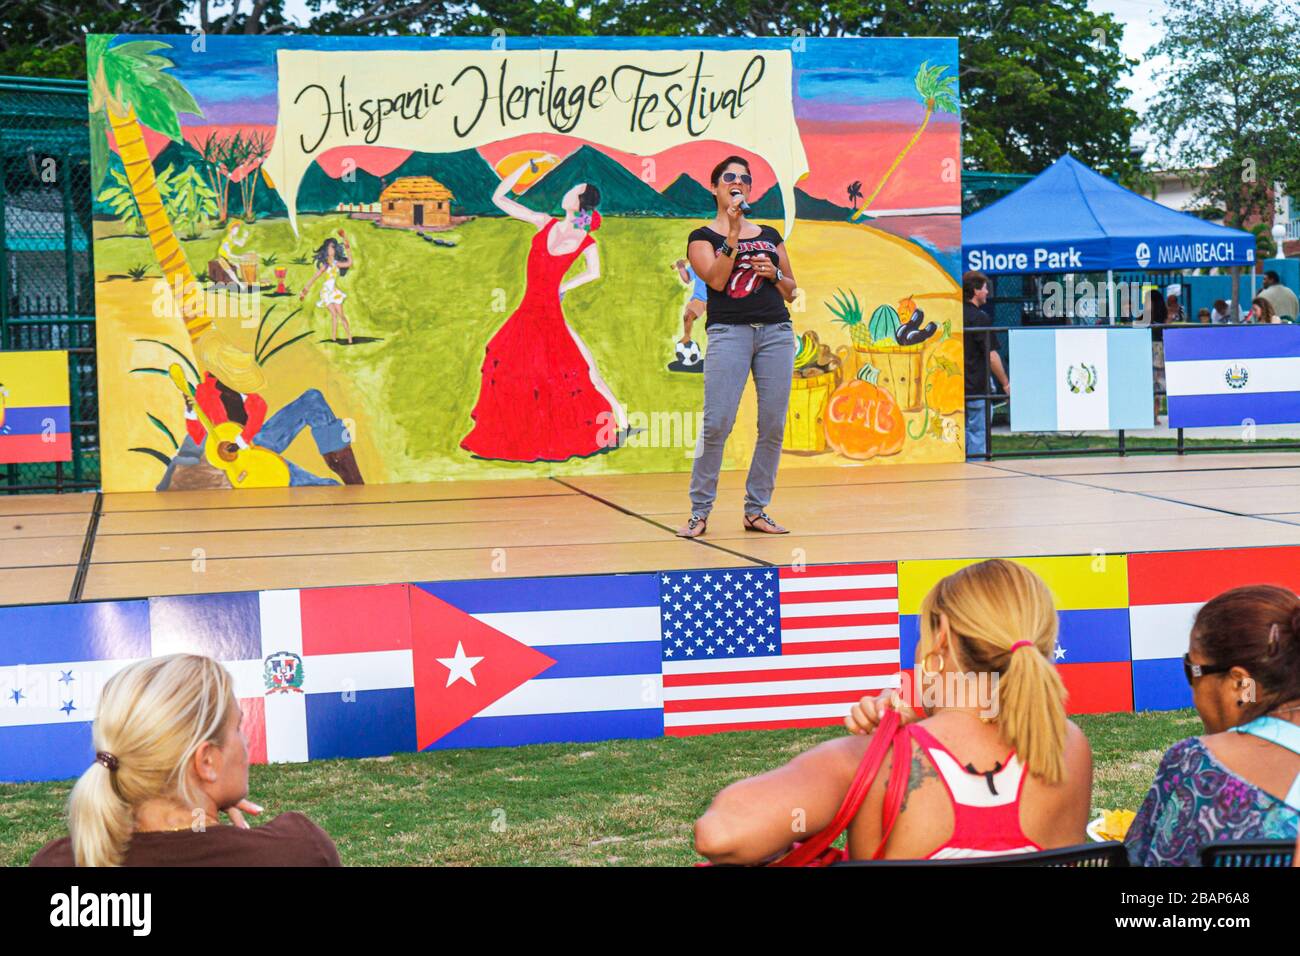 Miami Beach Florida,North Beach,Northshore Park,Ispan Heritage Festival,palcoscenico,cantante,cantare,performer,esibirsi,bandiere latino-americane,pubblico,wom Foto Stock